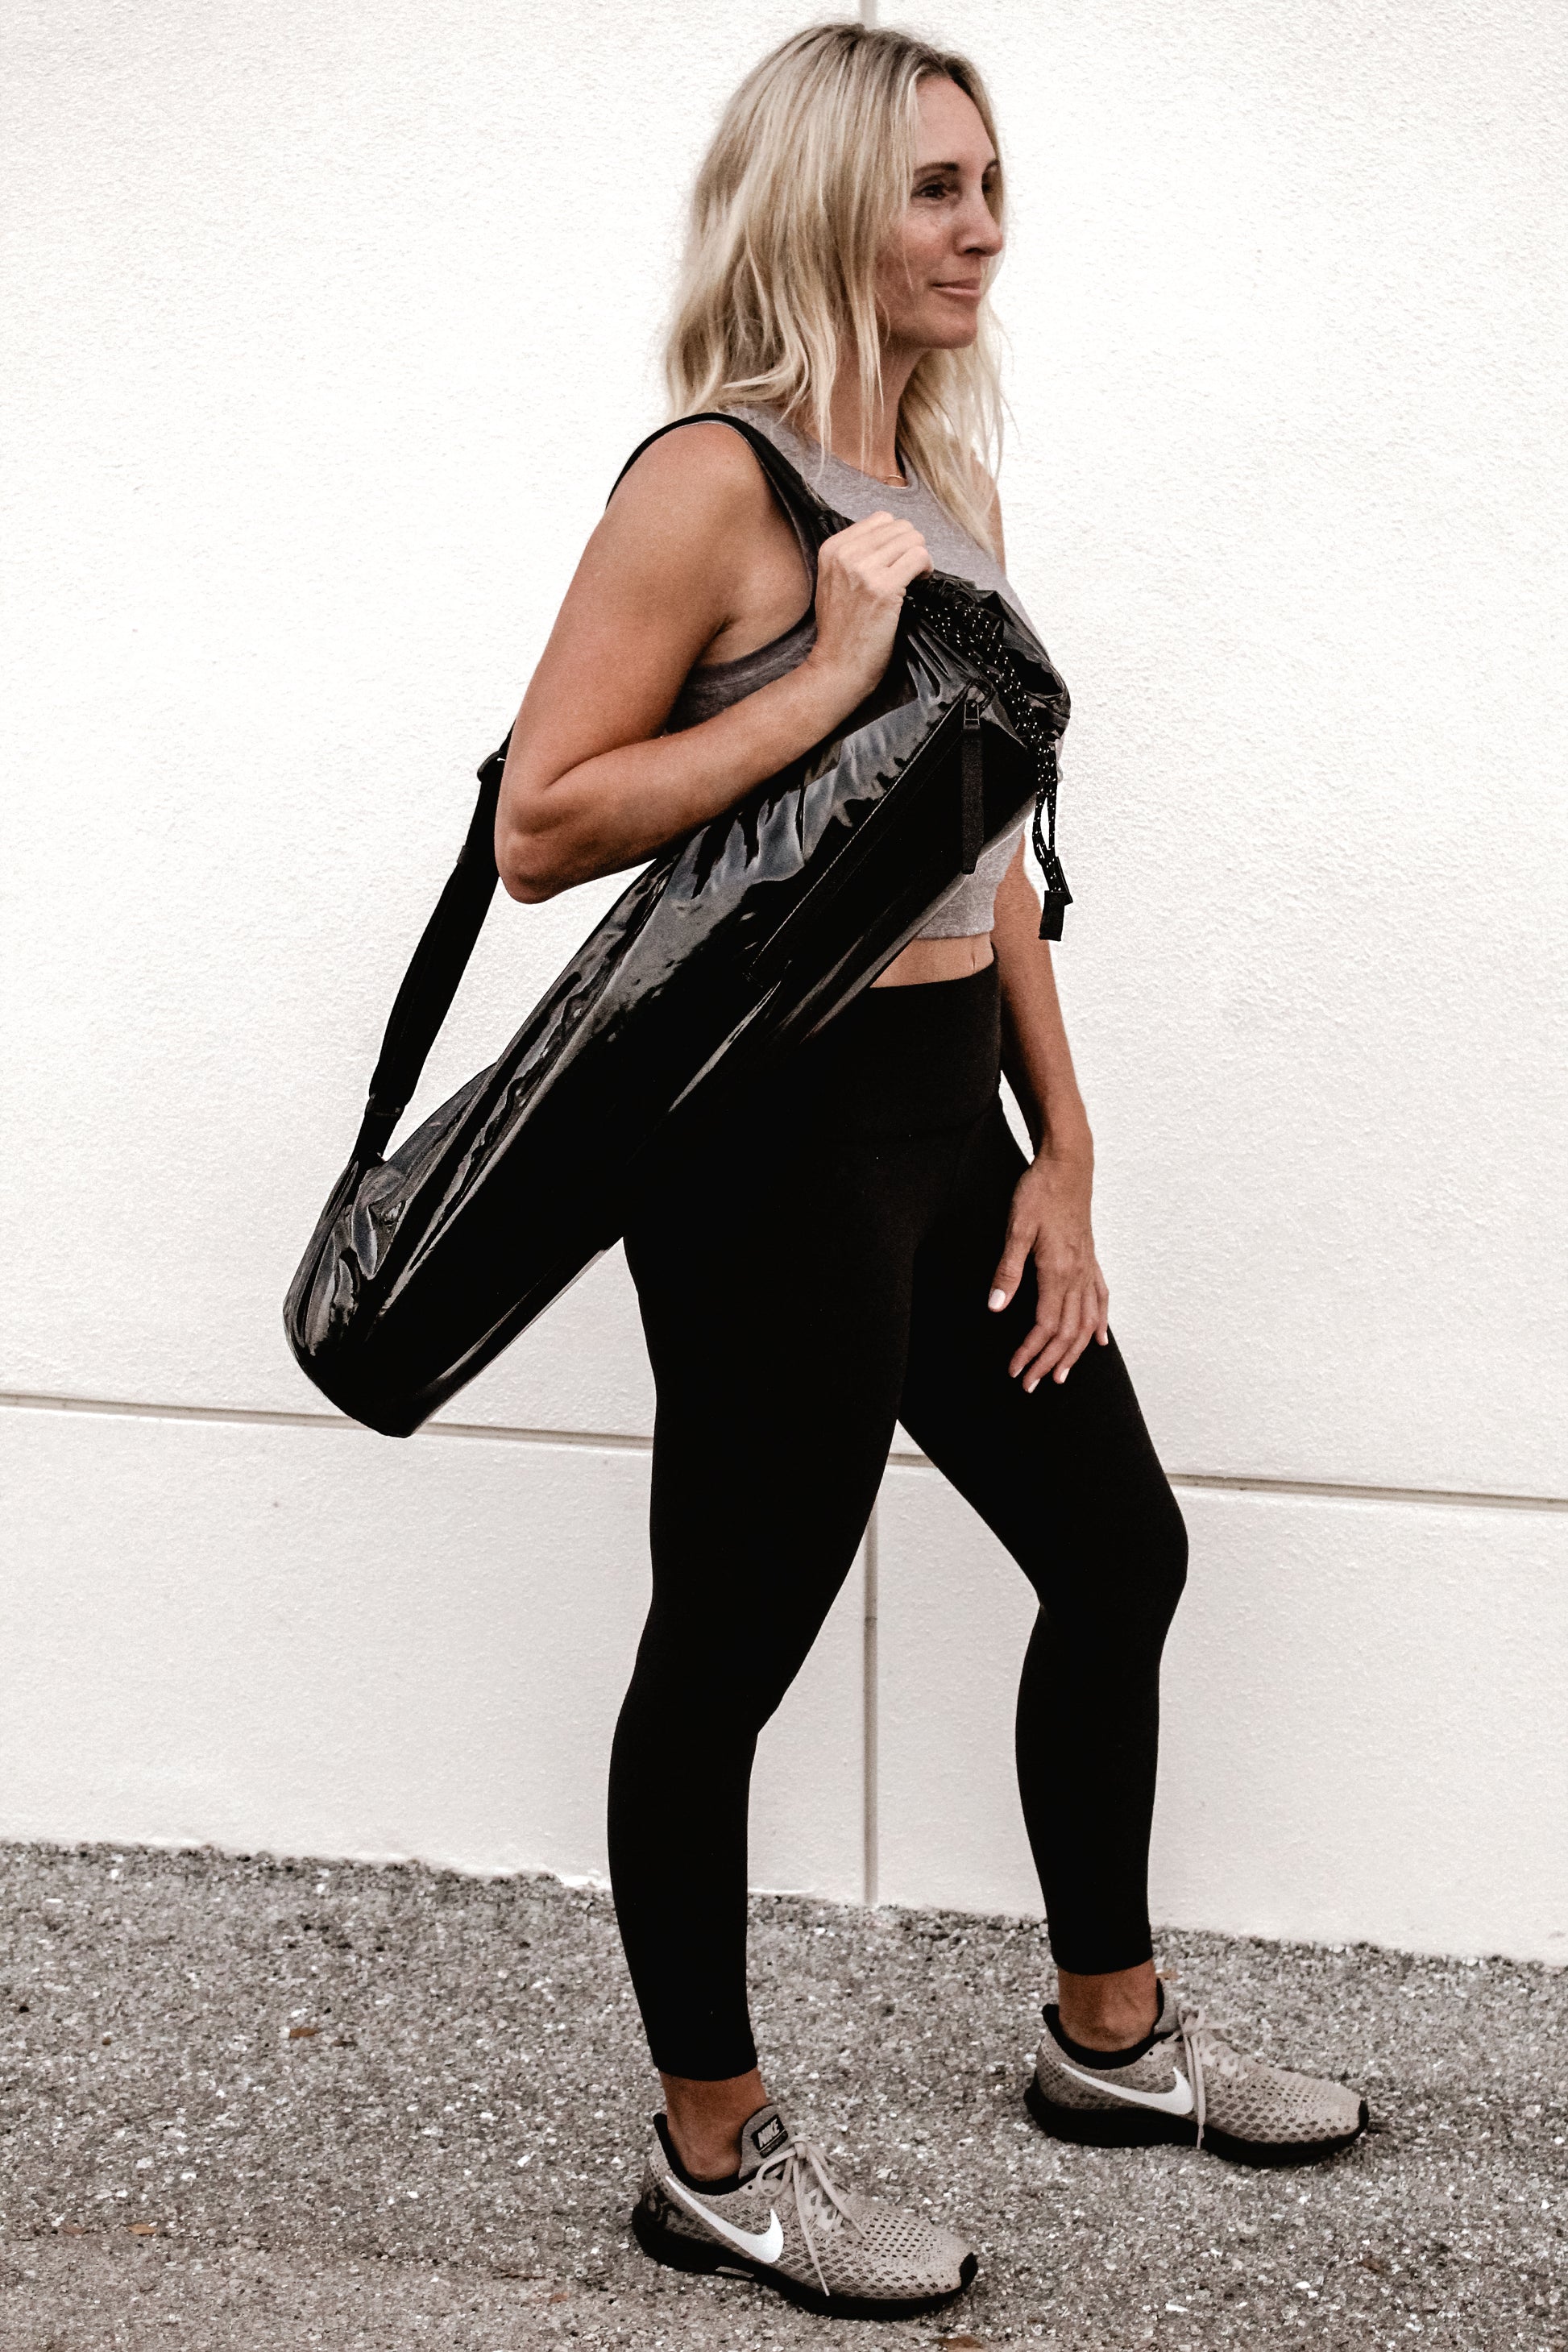 The Baldwin Yoga Mat Bag – Anya & Niki